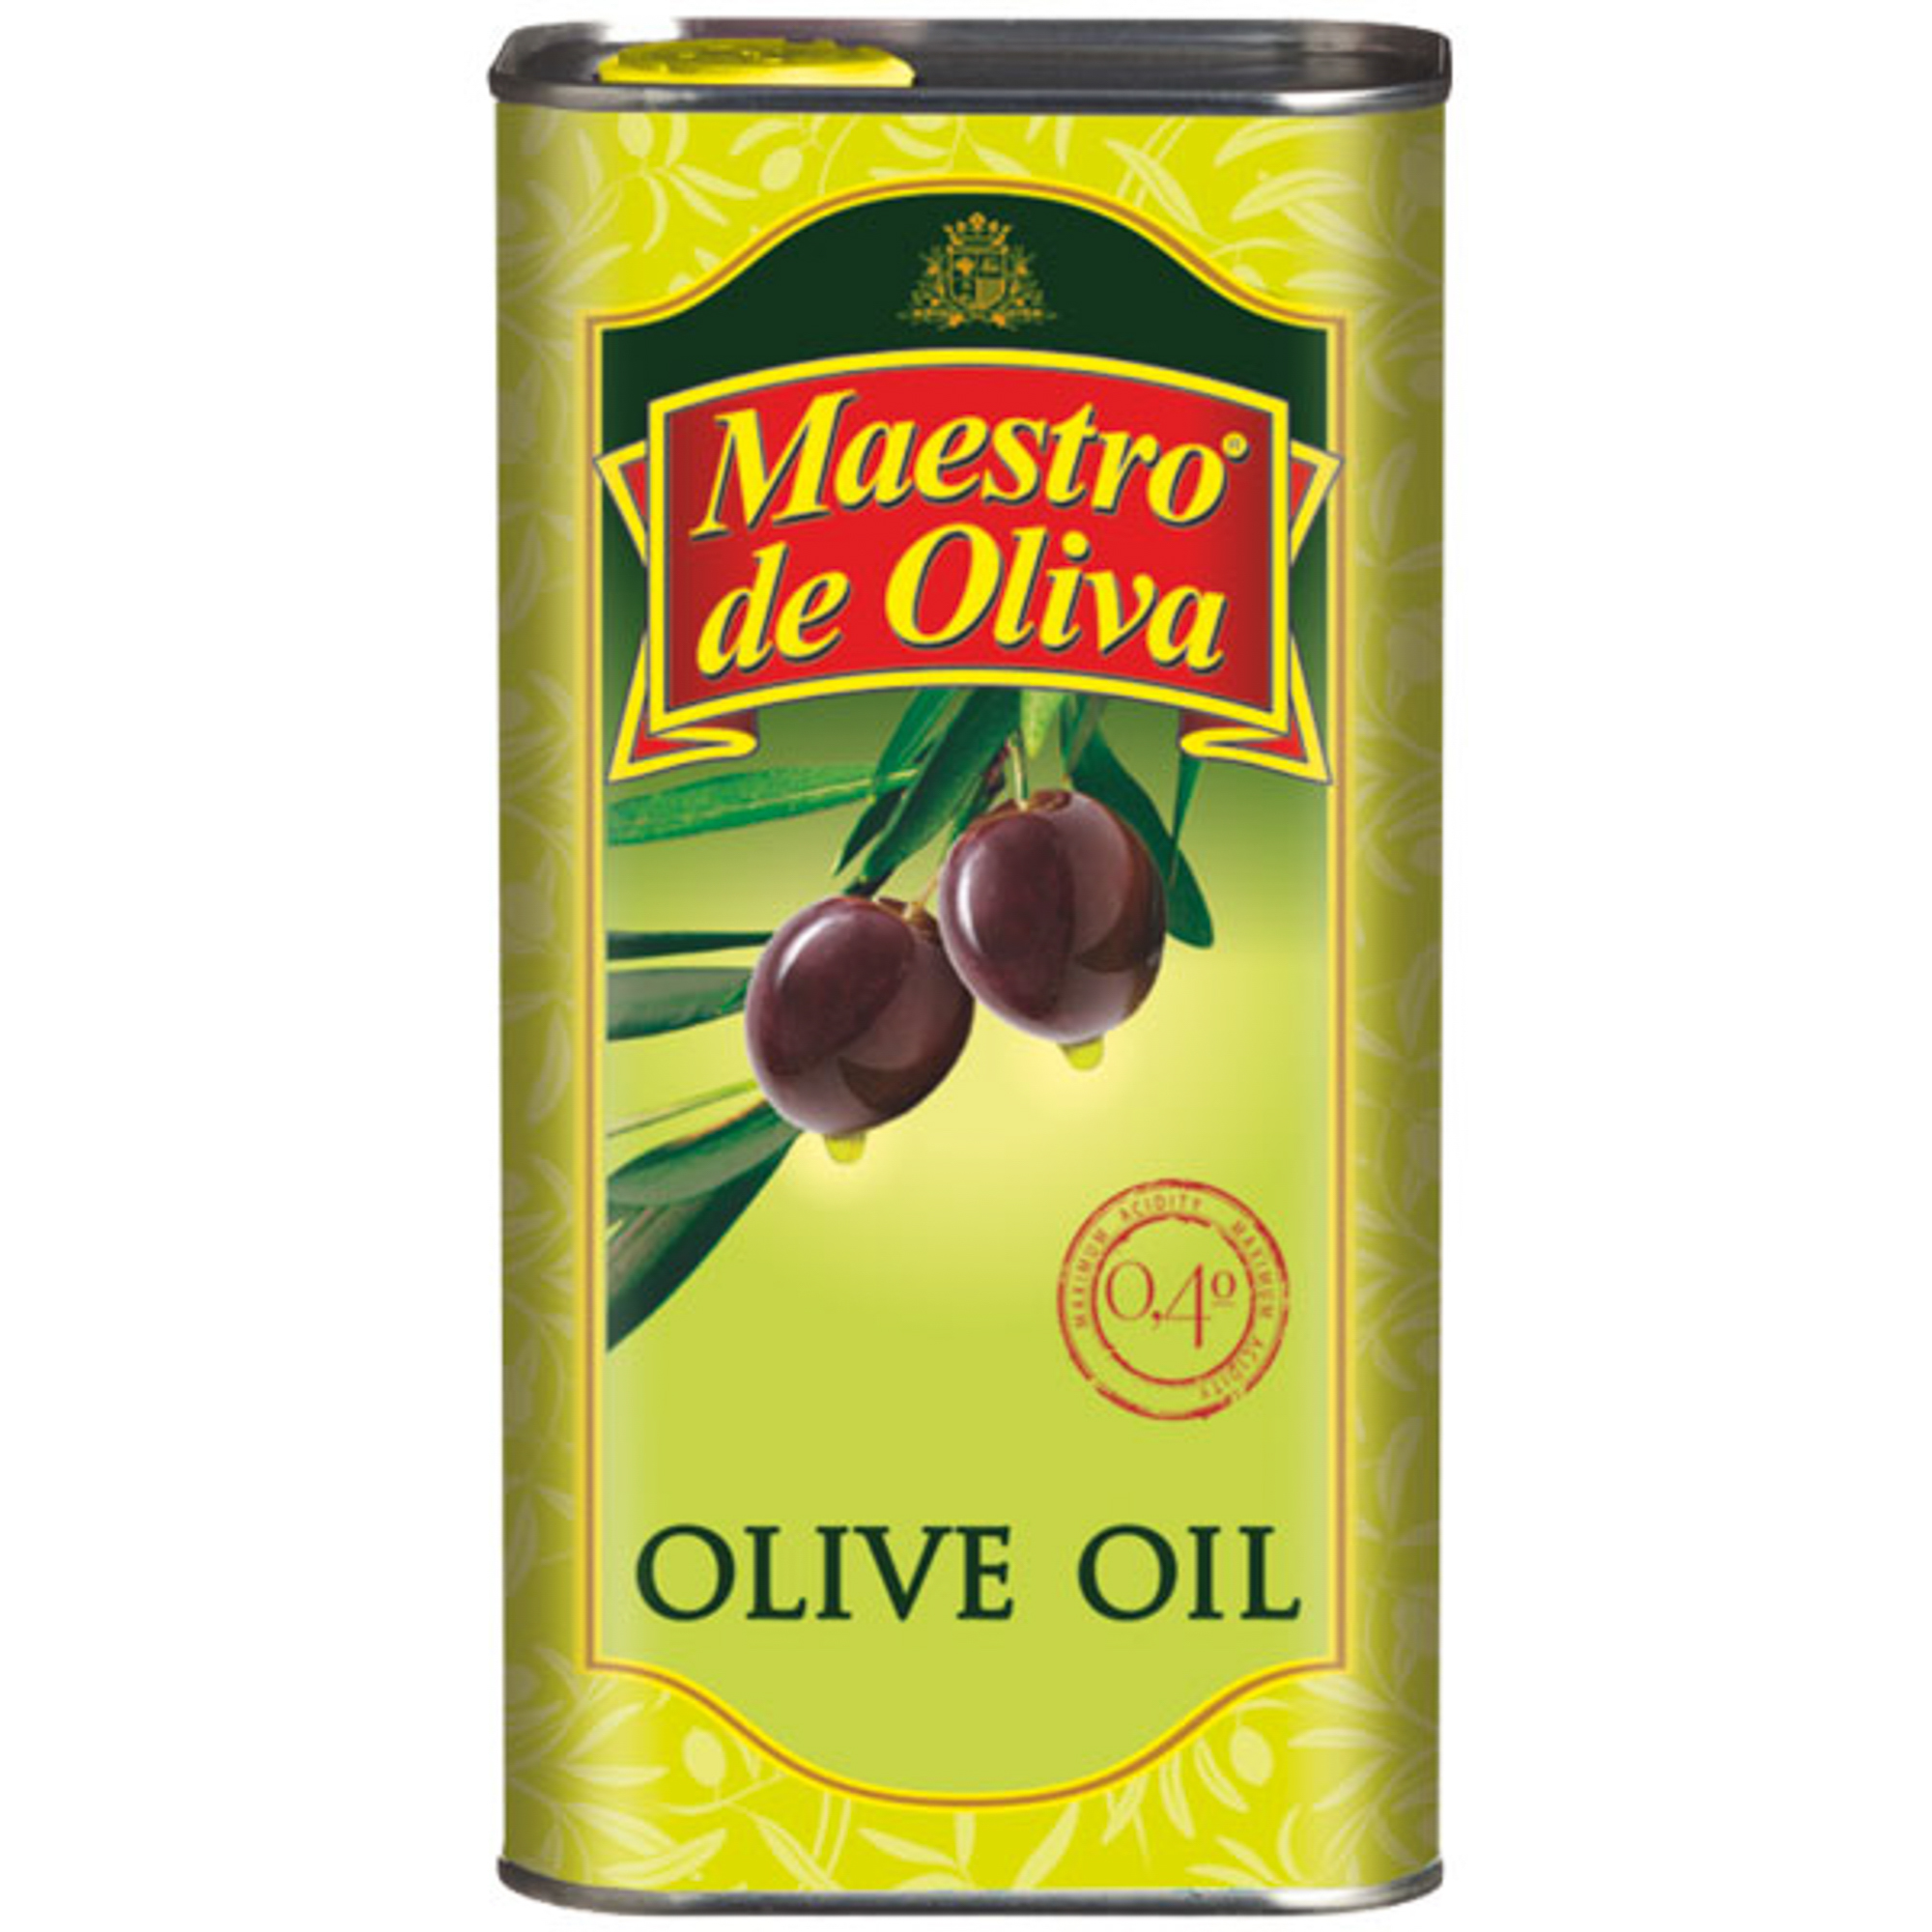 Оливковое масло в железной банке. Масло оливковое Maestro de Oliva Extra Virgin 500мл. Maestro de Oliva масло оливковое ev 250мл. Оливковое масло, Экстра Вирджин 1 жестяная банка. Масло маэстро де олива 1л банка.